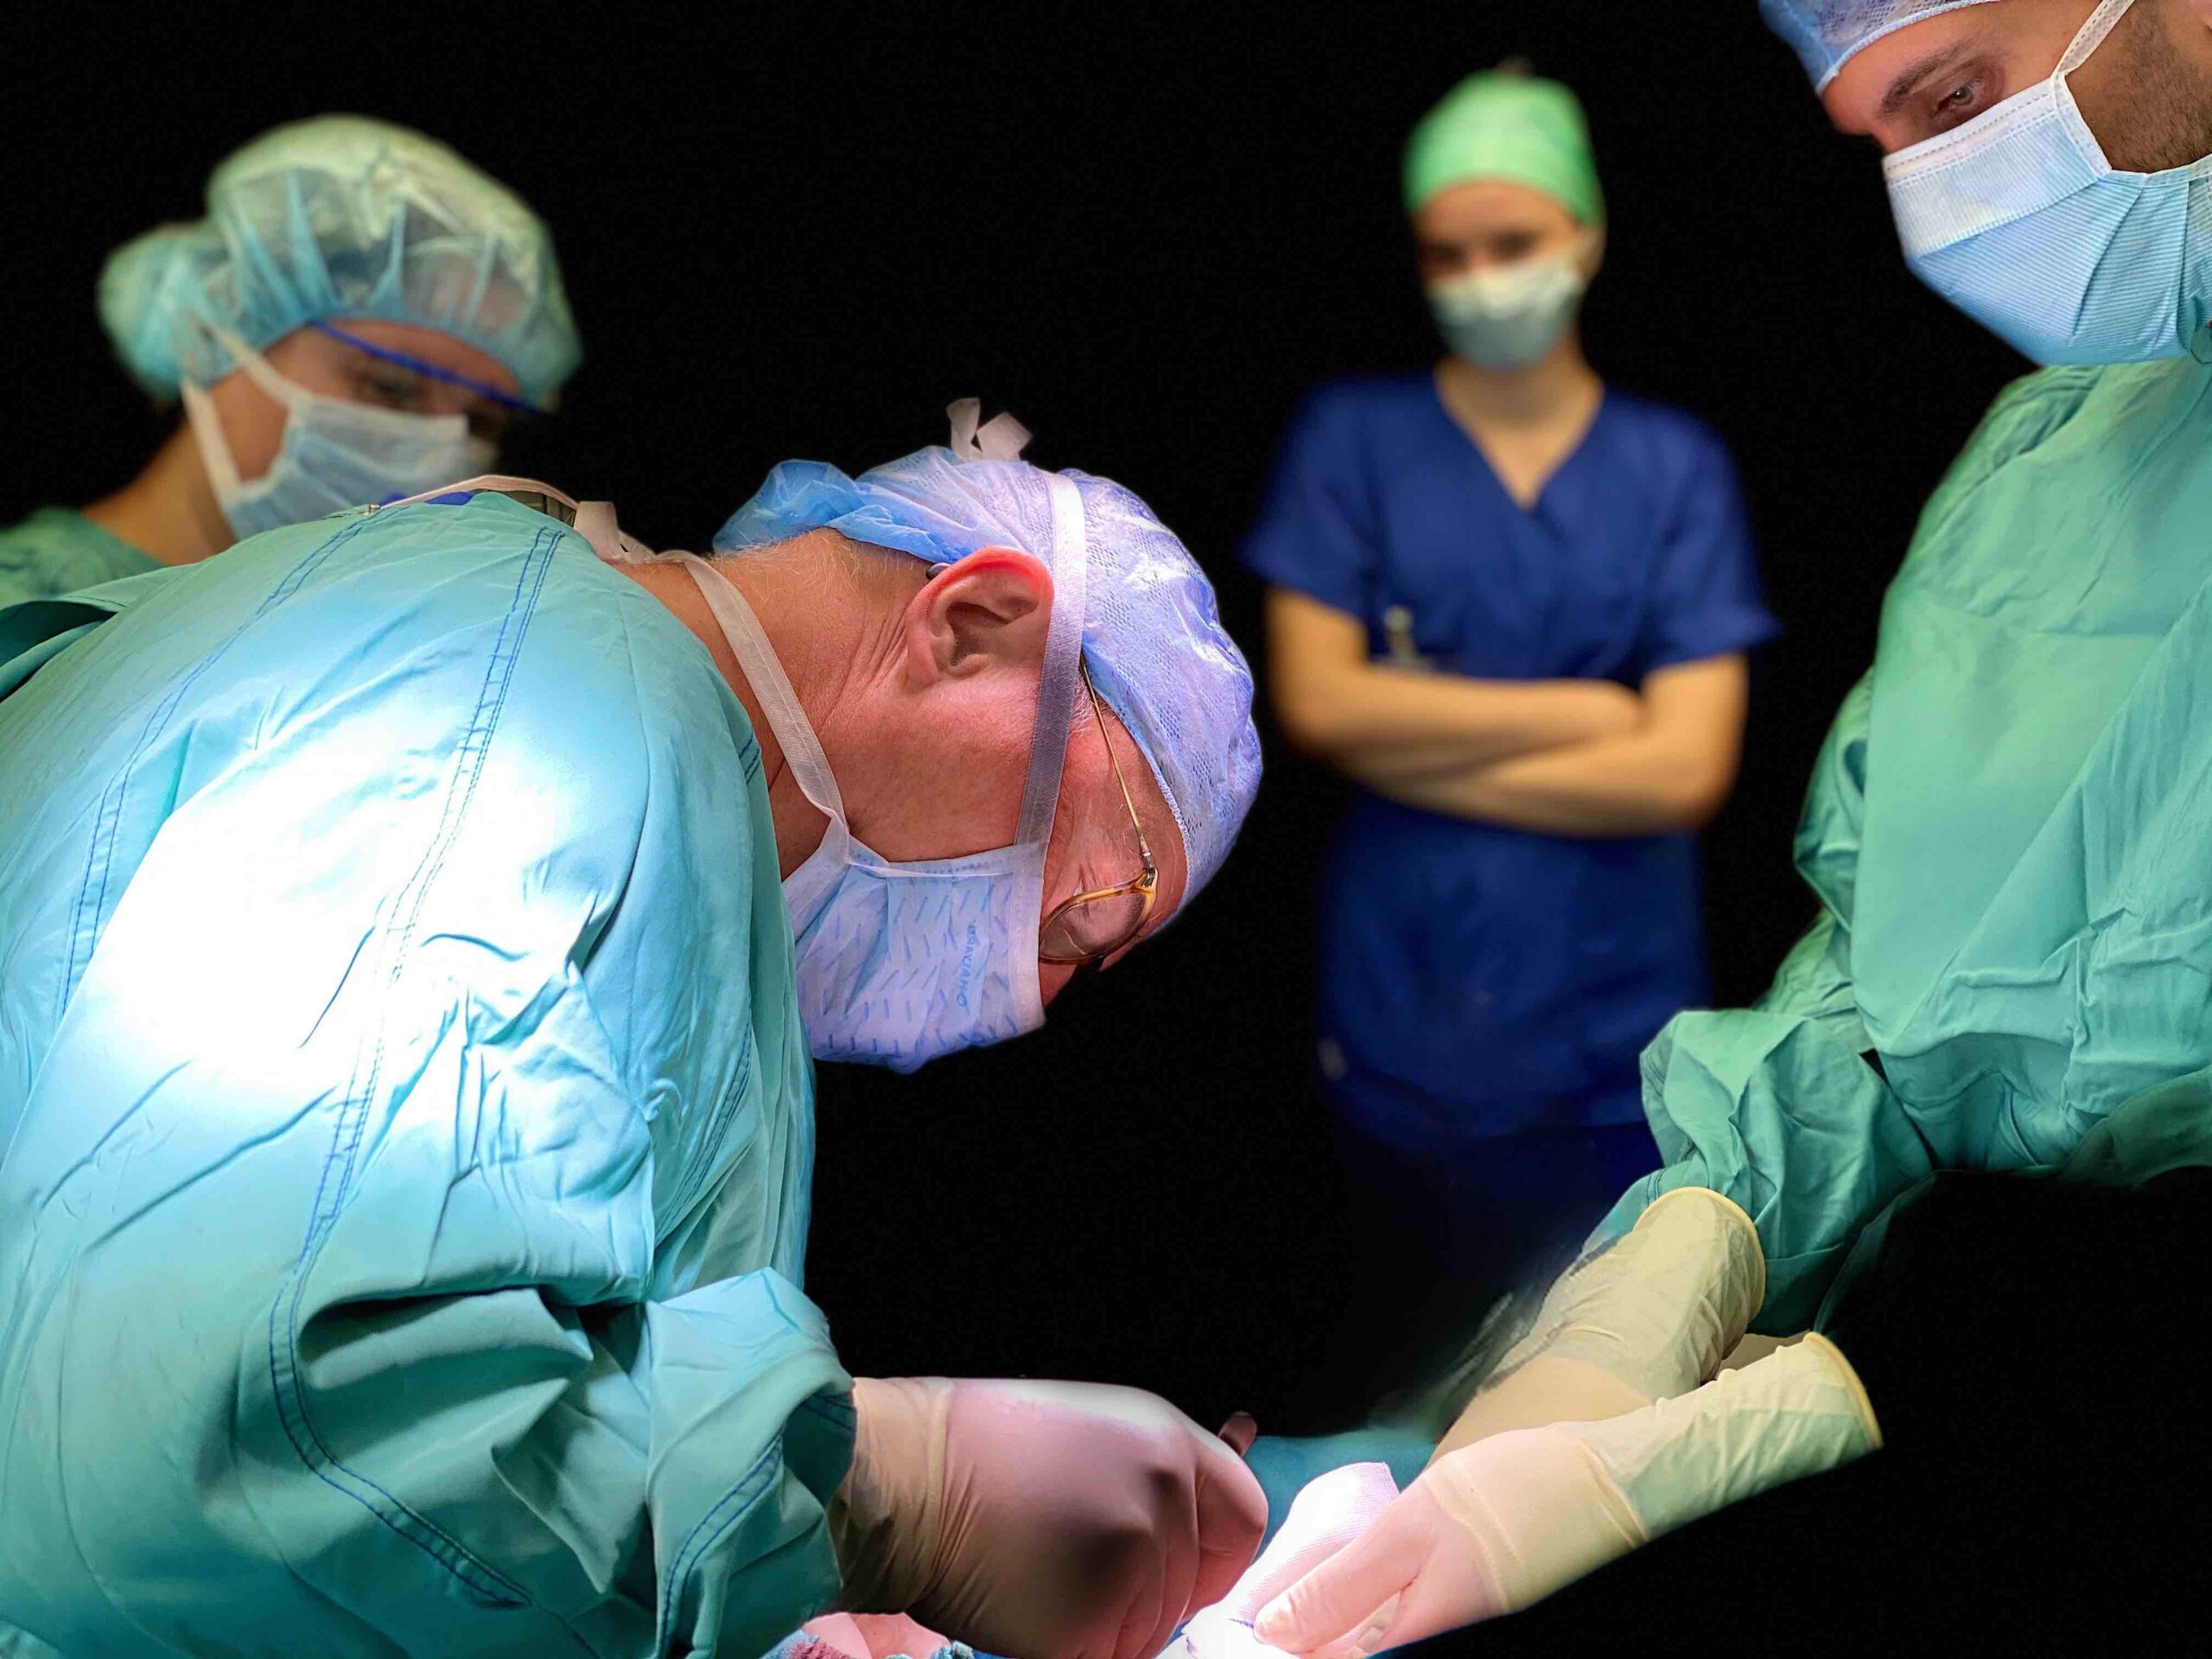 Hauttransplantation nur durch erfahrene Fachärzte für plastische Chirurgie